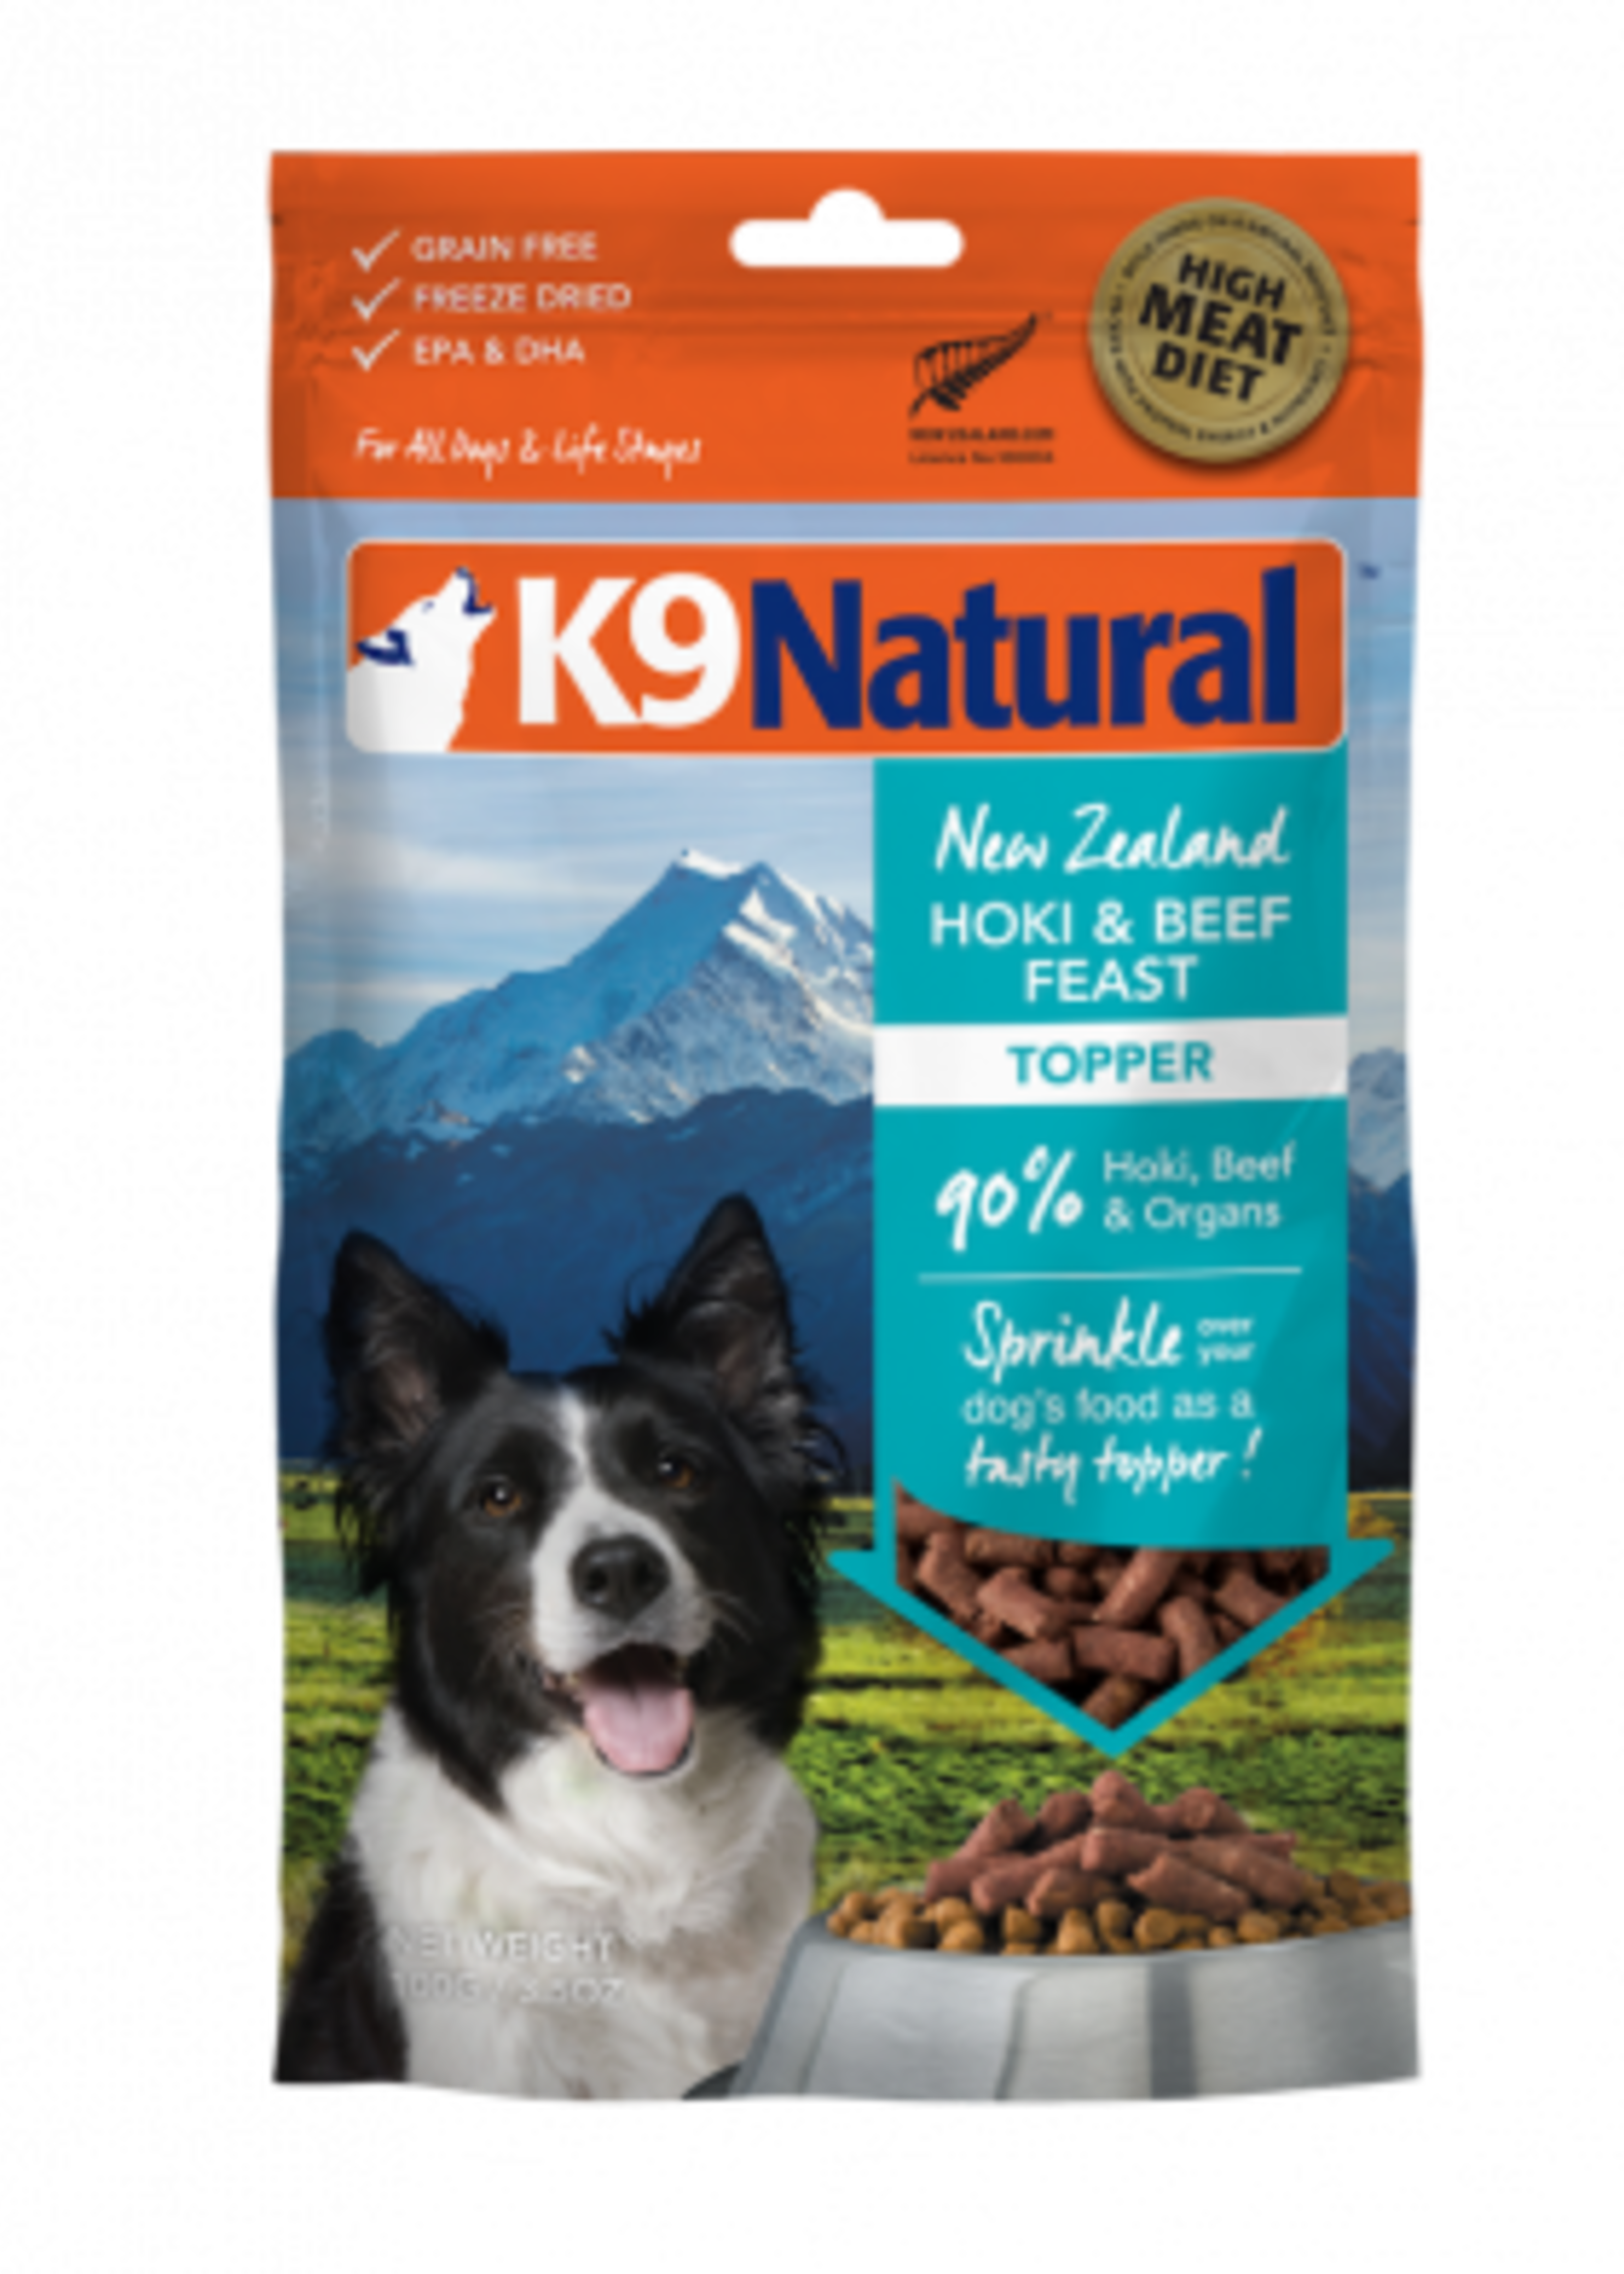 K9 Natural K9 Natural - New Zealand Hoki and Beef Recipe